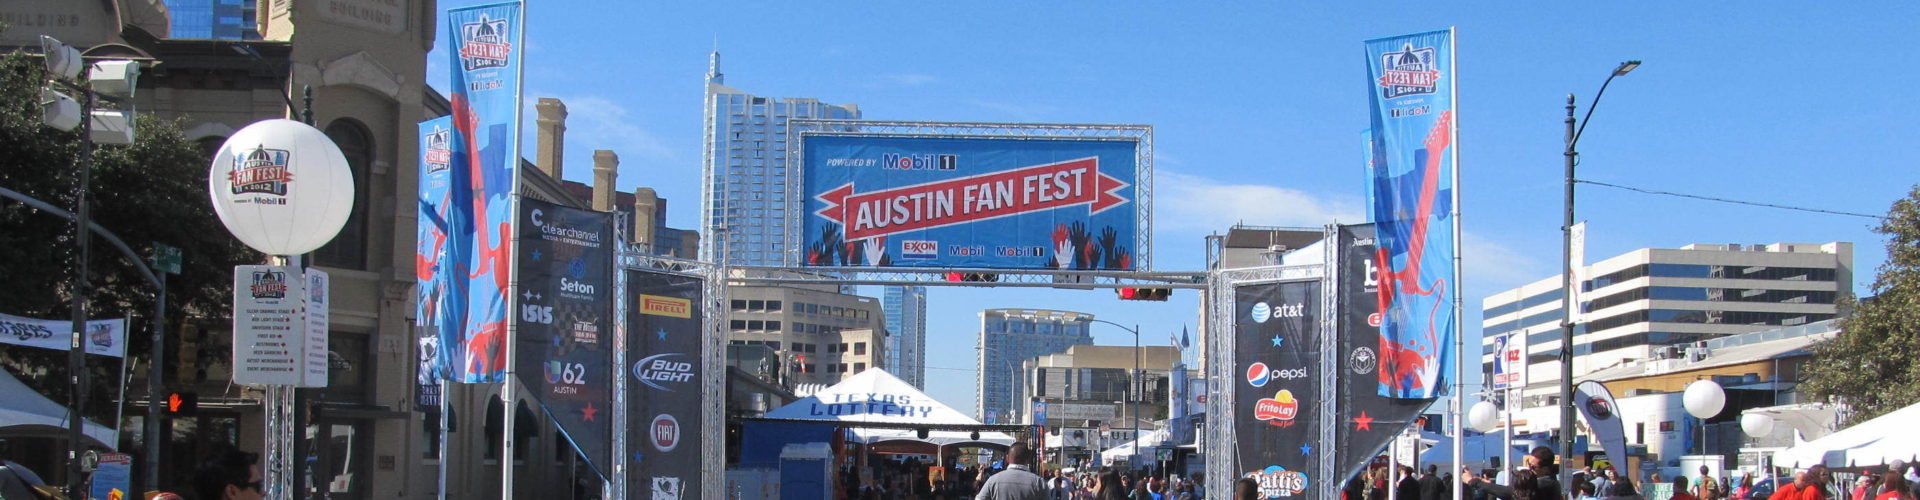 Truss Structure at Austin Fan Fest